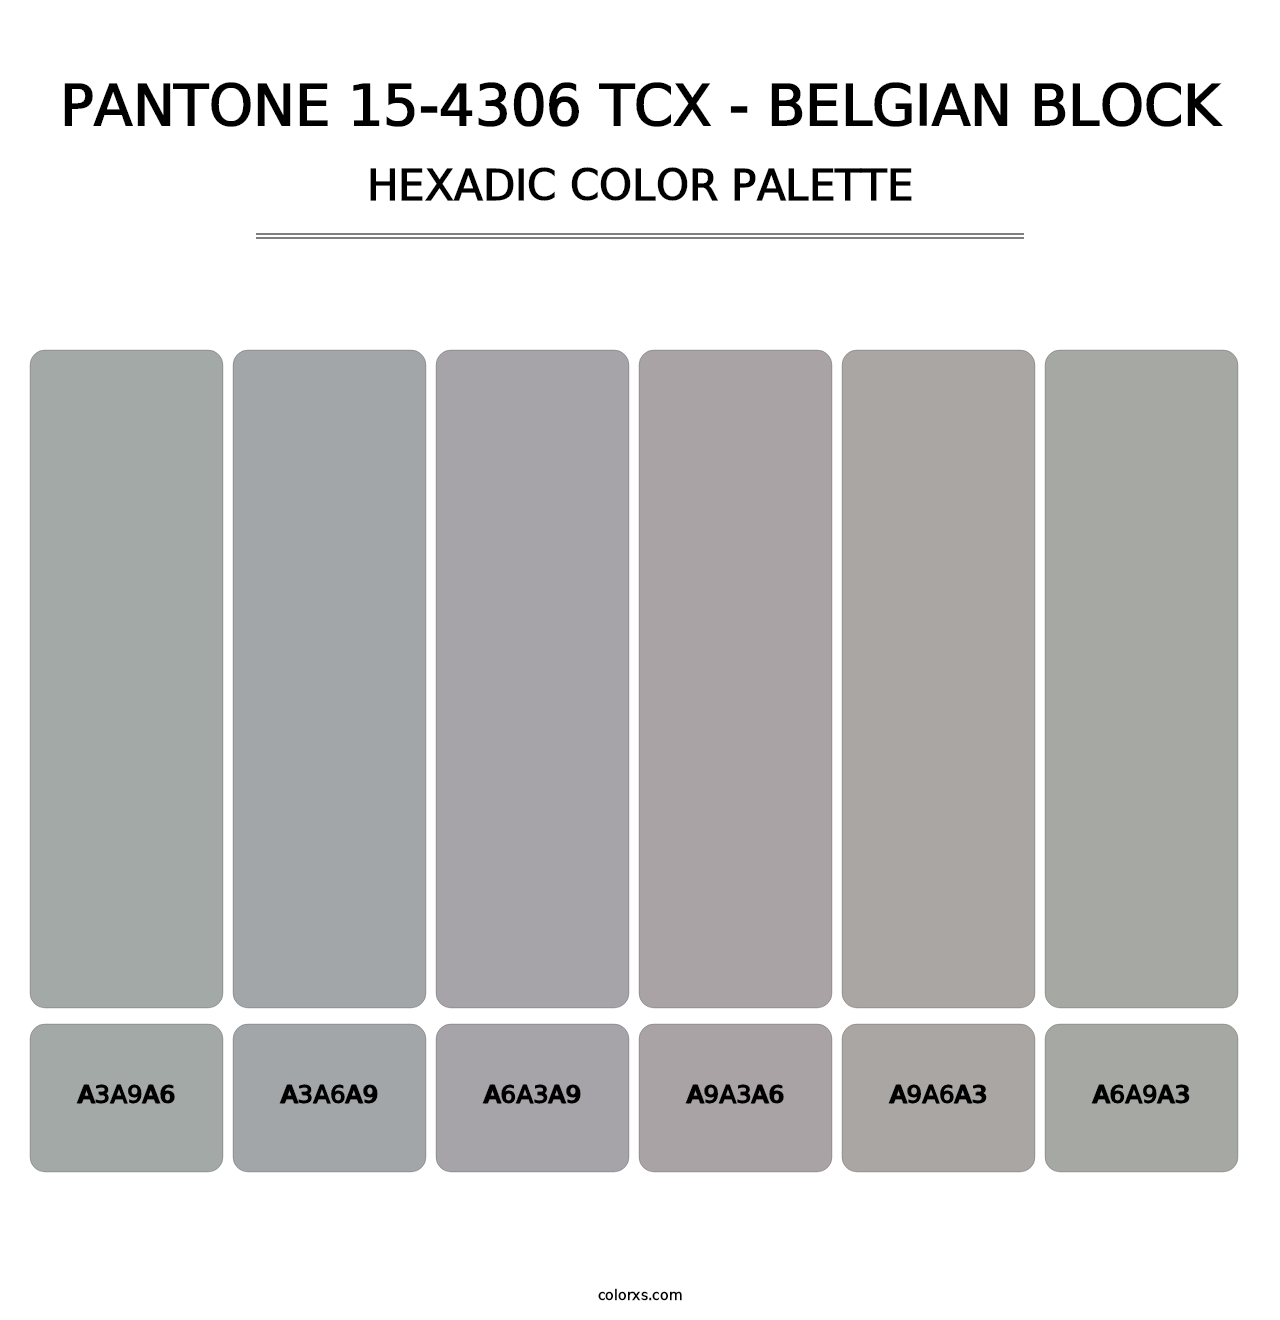 PANTONE 15-4306 TCX - Belgian Block - Hexadic Color Palette